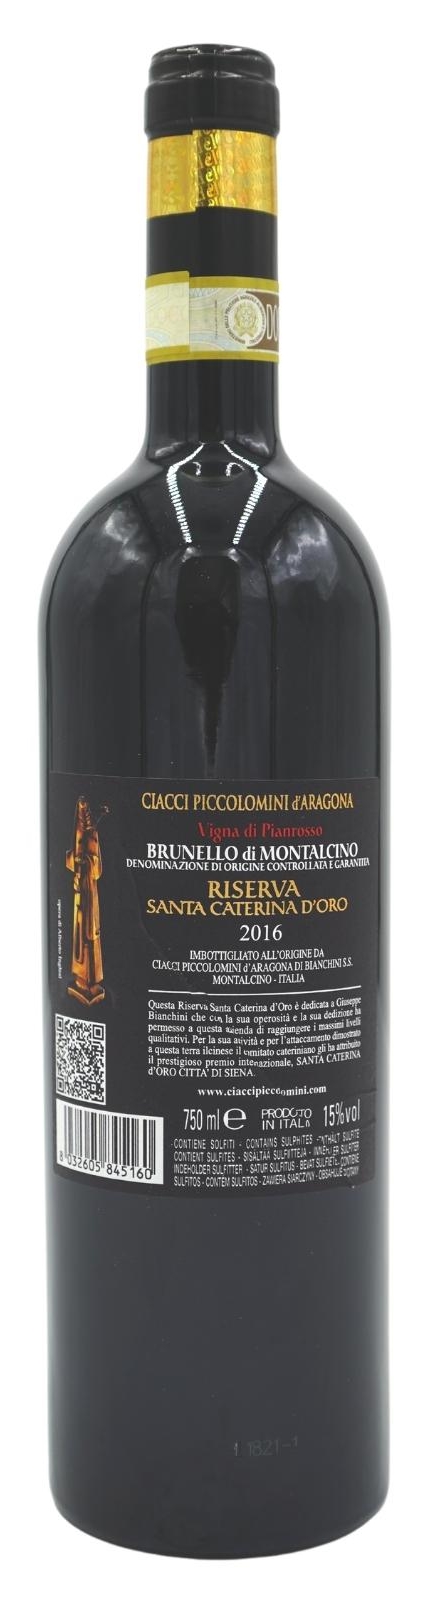 2016 Brunello di Montalcino Riserva Pianrosso Santa Caterina d'oro